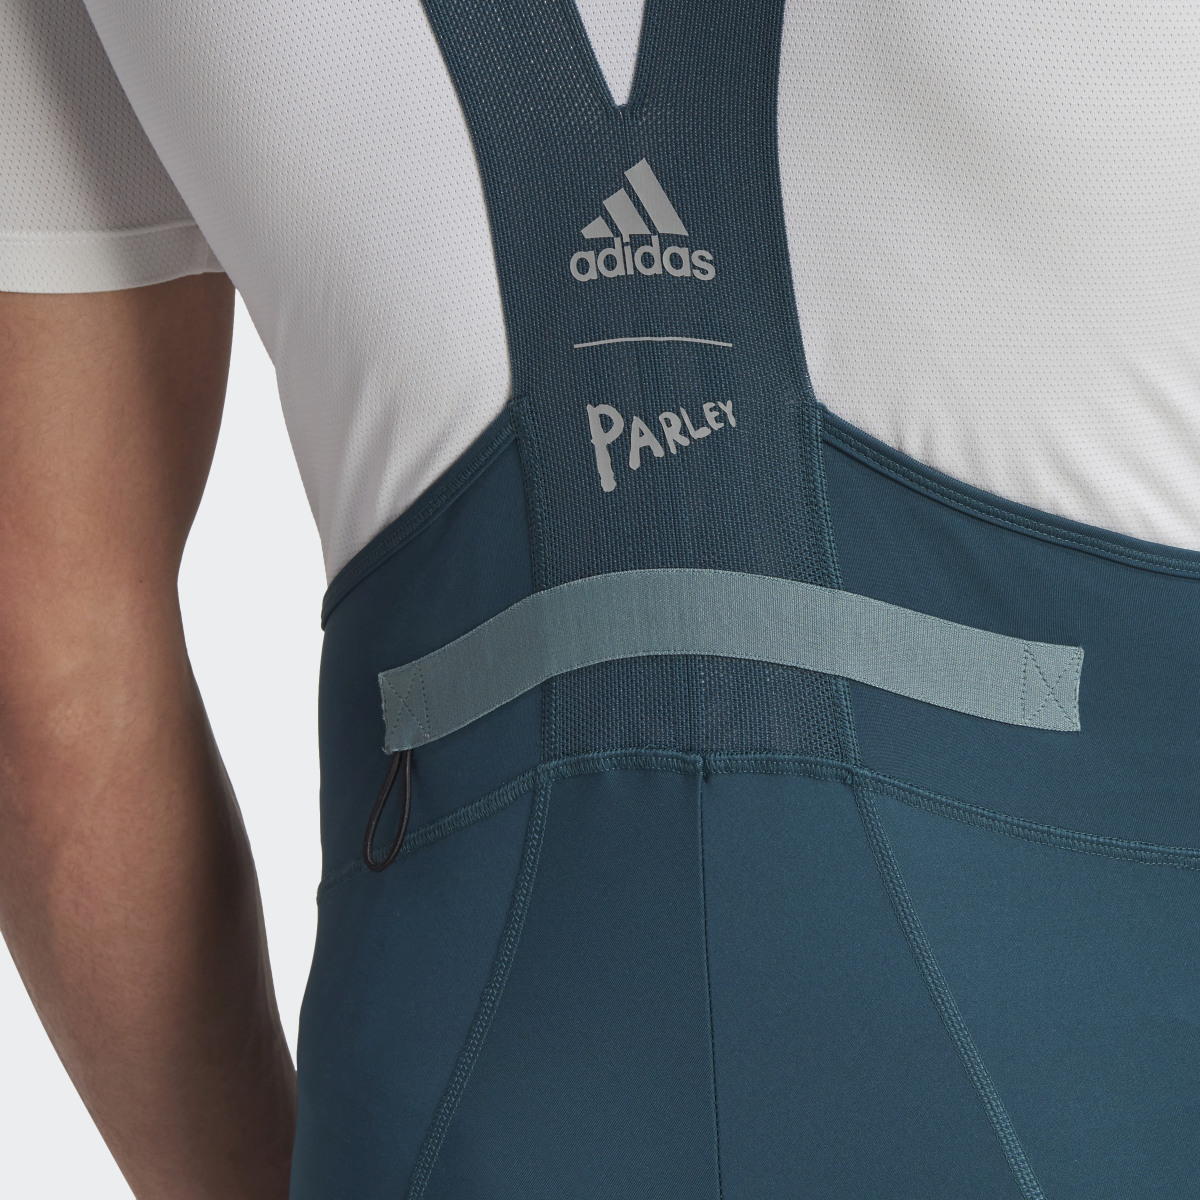 Adidas The Padded Cycling Bib Shorts. 10